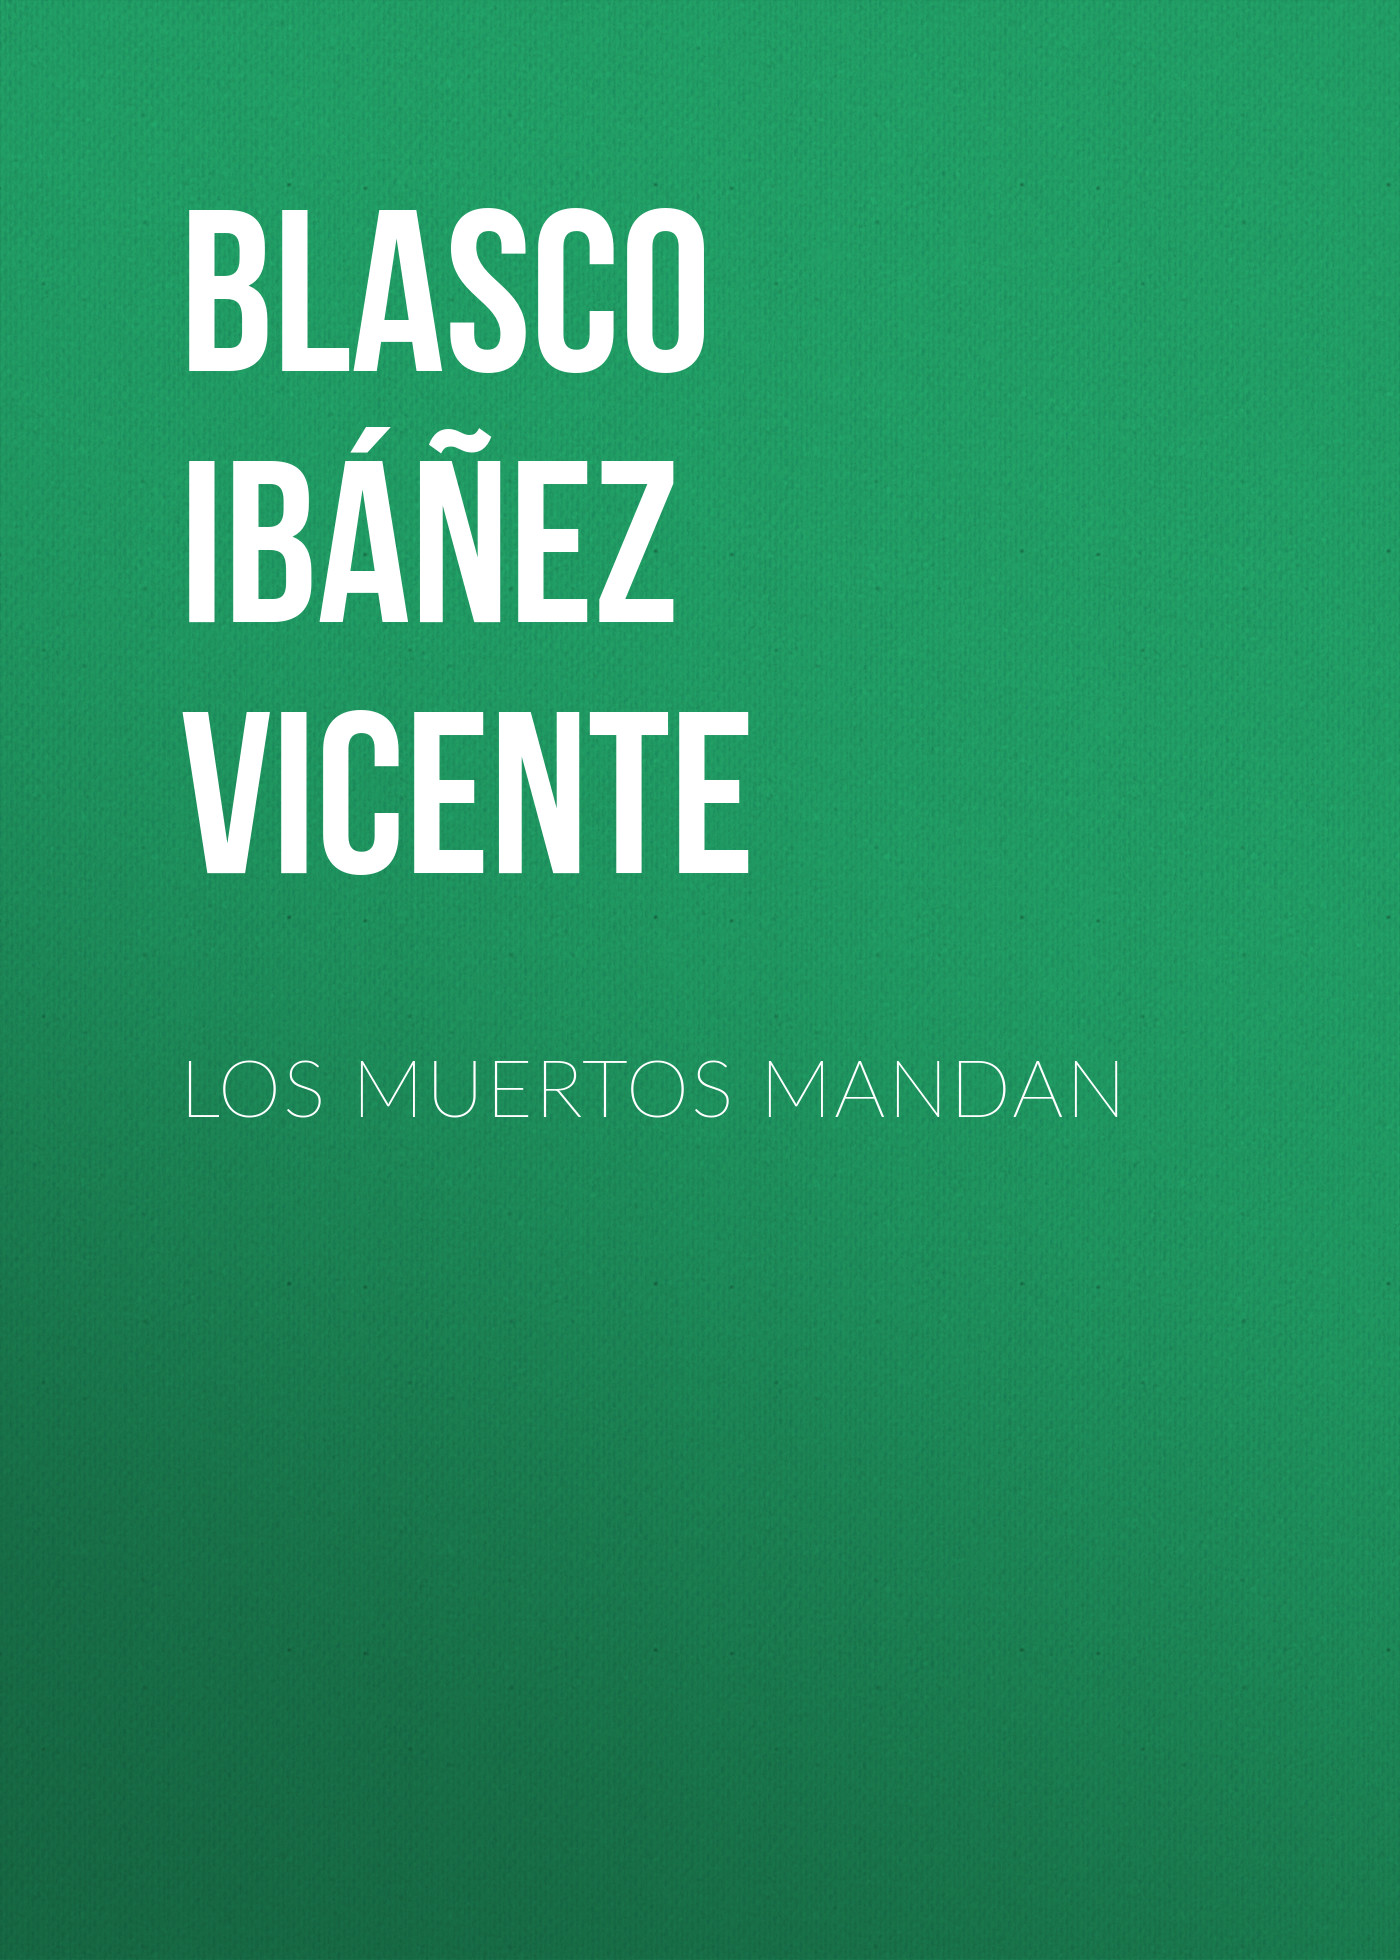 Книга Los muertos mandan из серии , созданная Vicente Blasco Ibáñez, может относится к жанру Зарубежная классика, Зарубежная старинная литература. Стоимость электронной книги Los muertos mandan с идентификатором 36364750 составляет 0 руб.